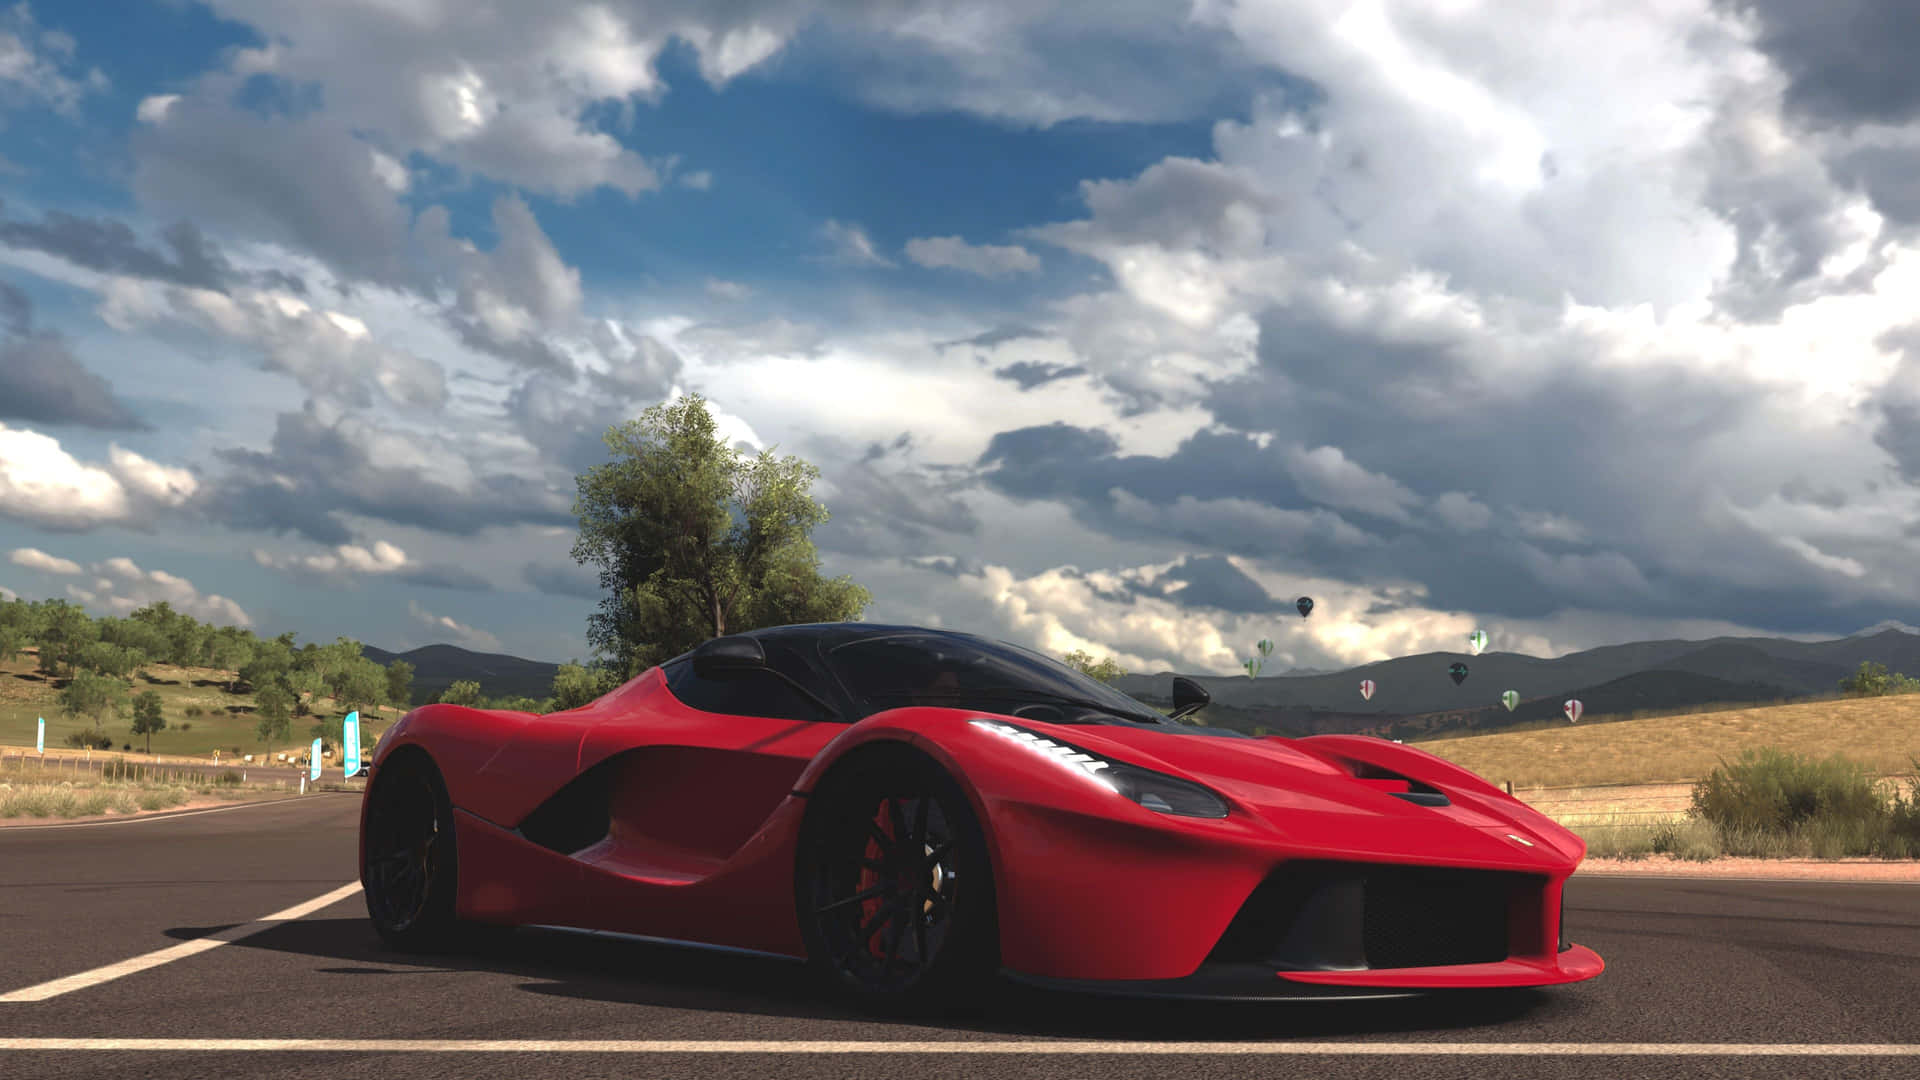 A dream come true for Ferrari lovers – the magnificent 4k Ferrari